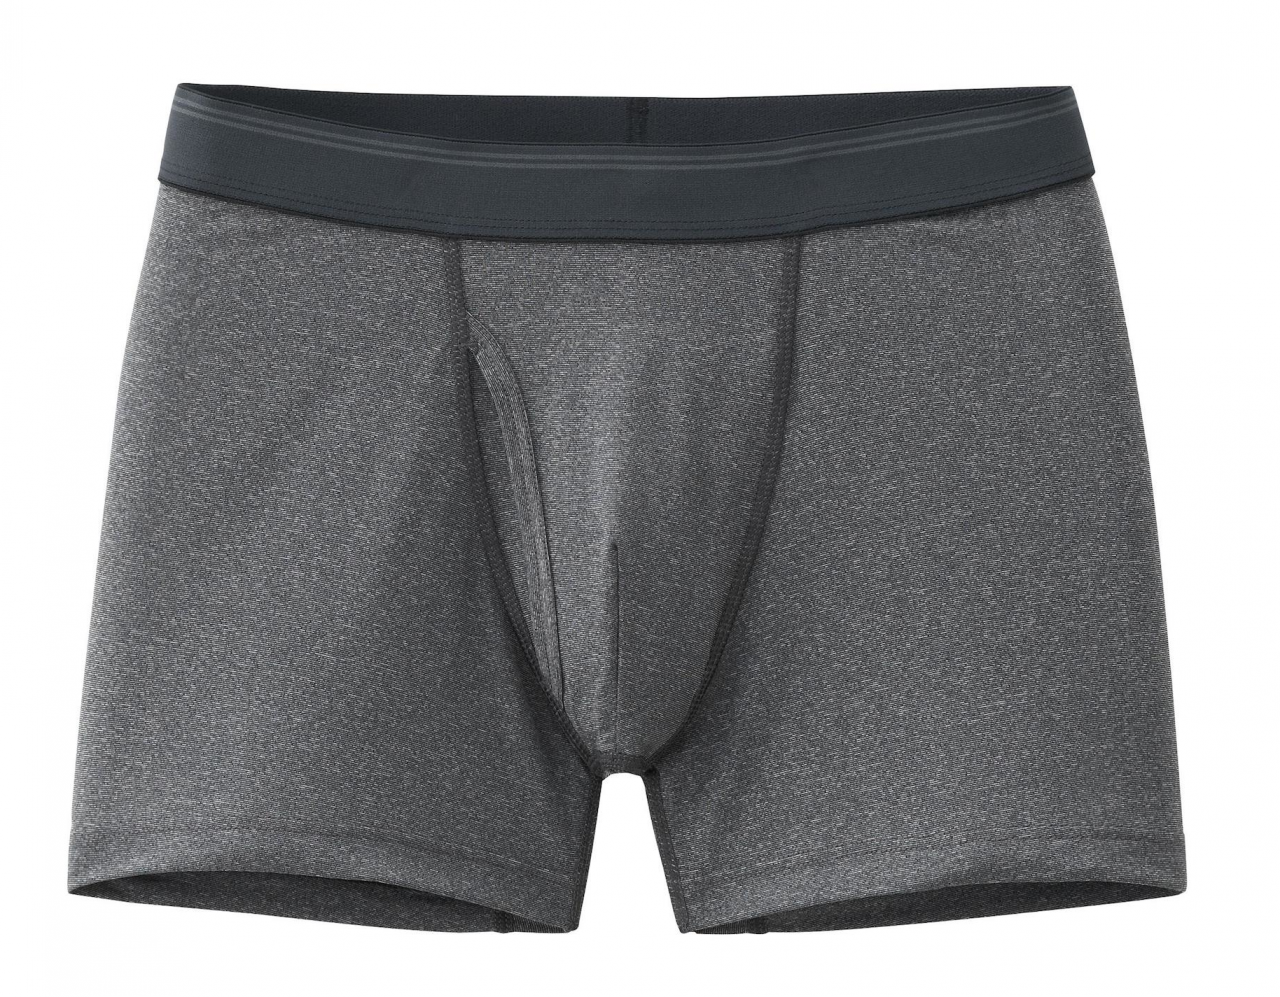 Crazy Cool Underwear® Seamless Mens Boxer Briefs Underwear 6-Pack